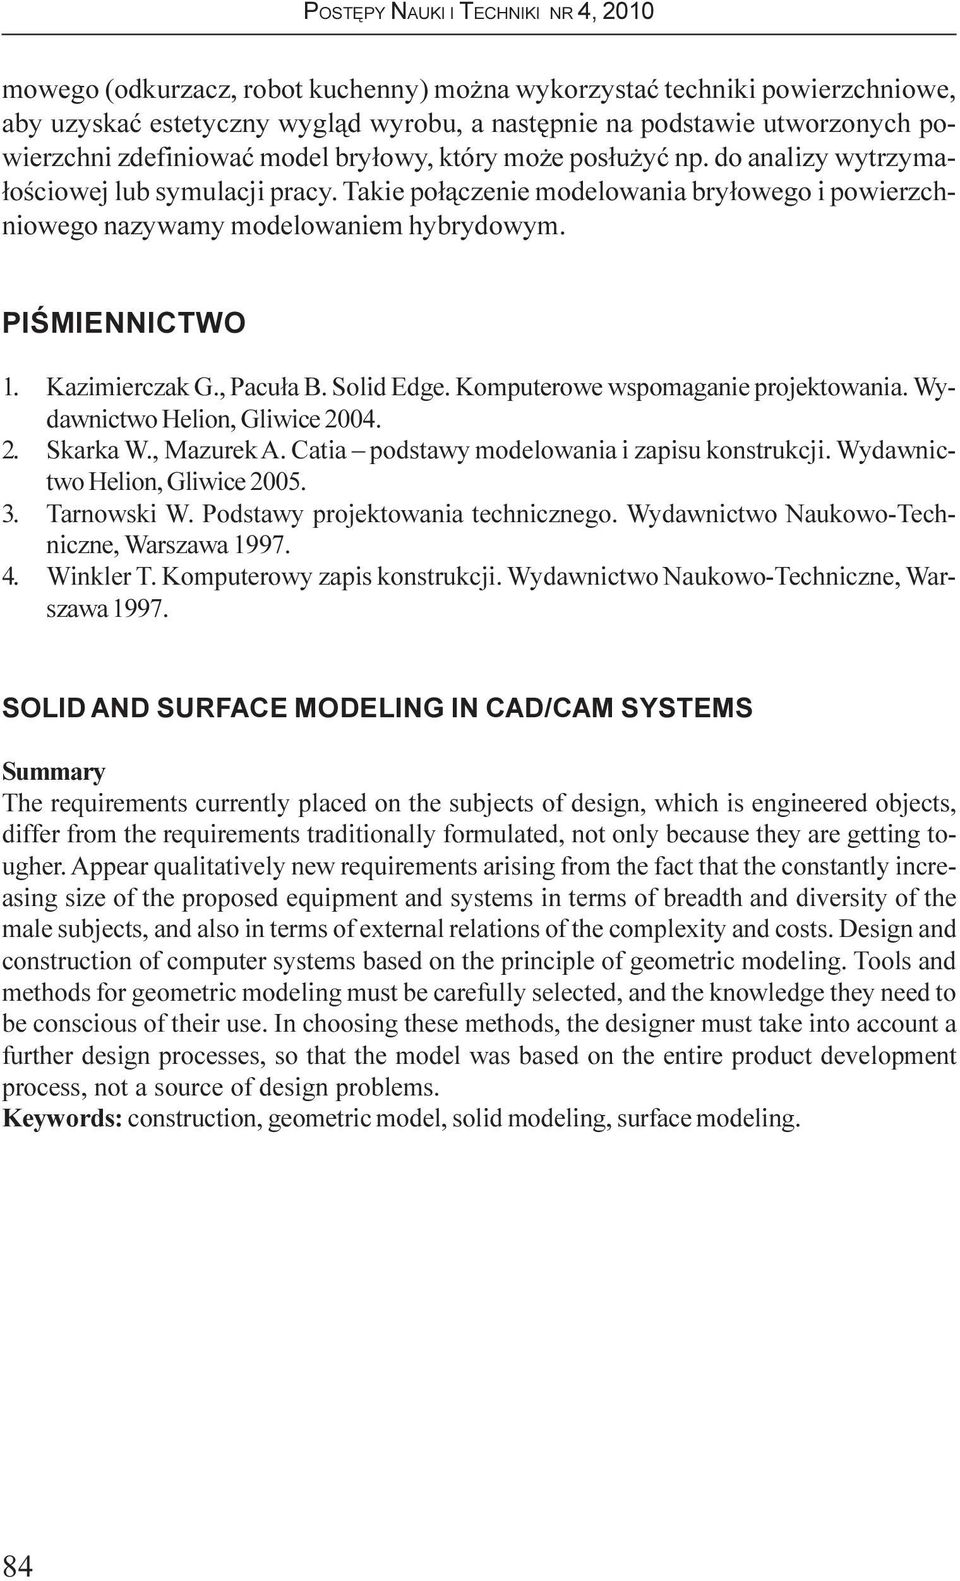 , Pacu³a B. Solid Edge. Komputerowe wspomaganie projektowania. Wydawnictwo Helion, Gliwice 2004. 2. Skarka W., Mazurek A. Catia podstawy modelowania i zapisu konstrukcji.